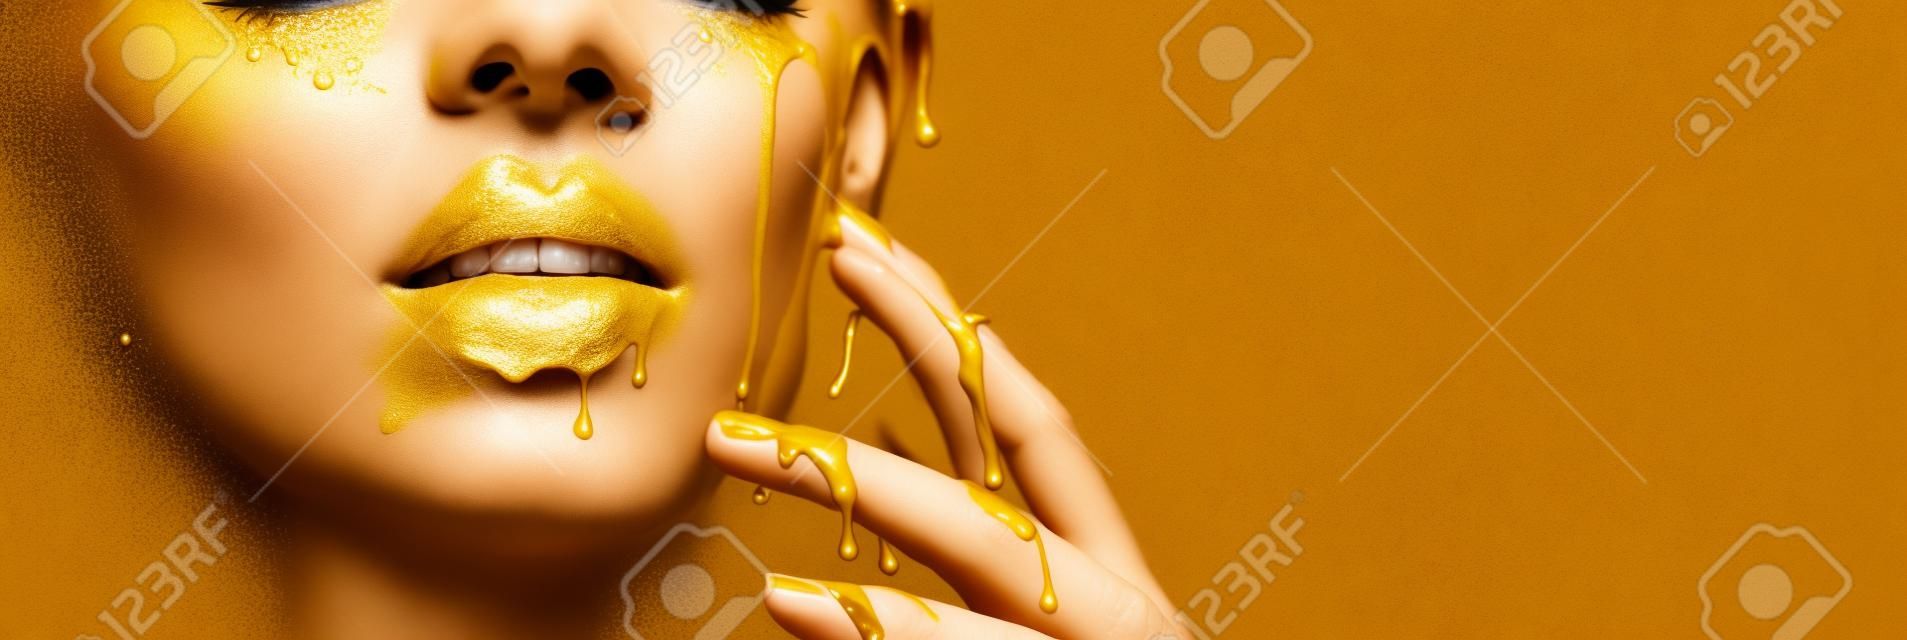 Macchie di vernice dorata gocciolano dalle labbra del viso e dalla mano, gocce di liquido dorato sulla bocca della bellissima modella, trucco astratto creativo. Volto di donna di bellezza